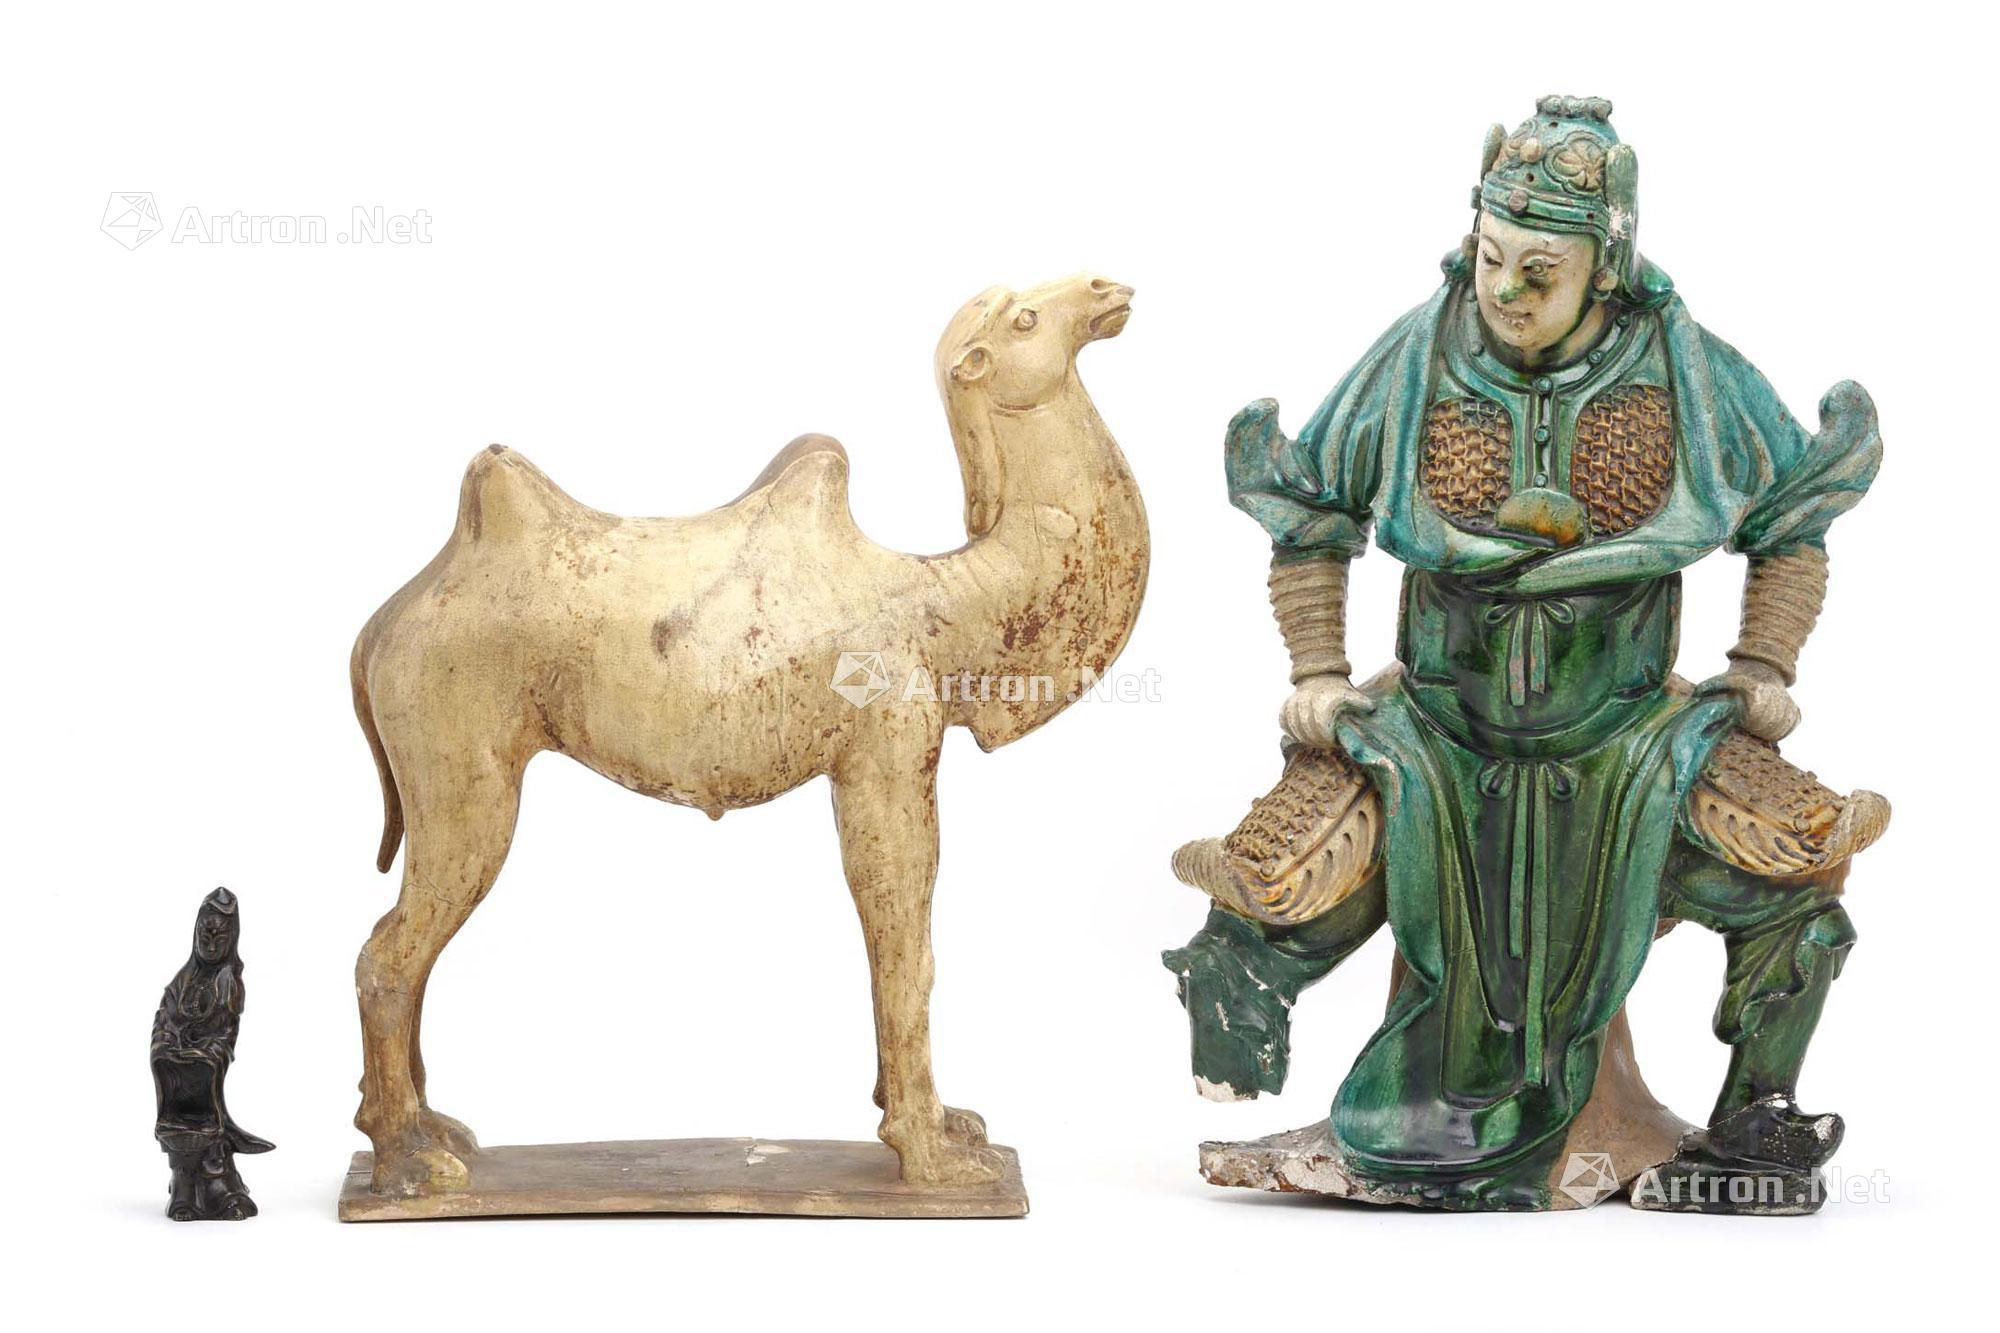 安い専門店 【後漢】青銅器 中国古玩 中国美術 騎馬俑 発掘品 工芸品